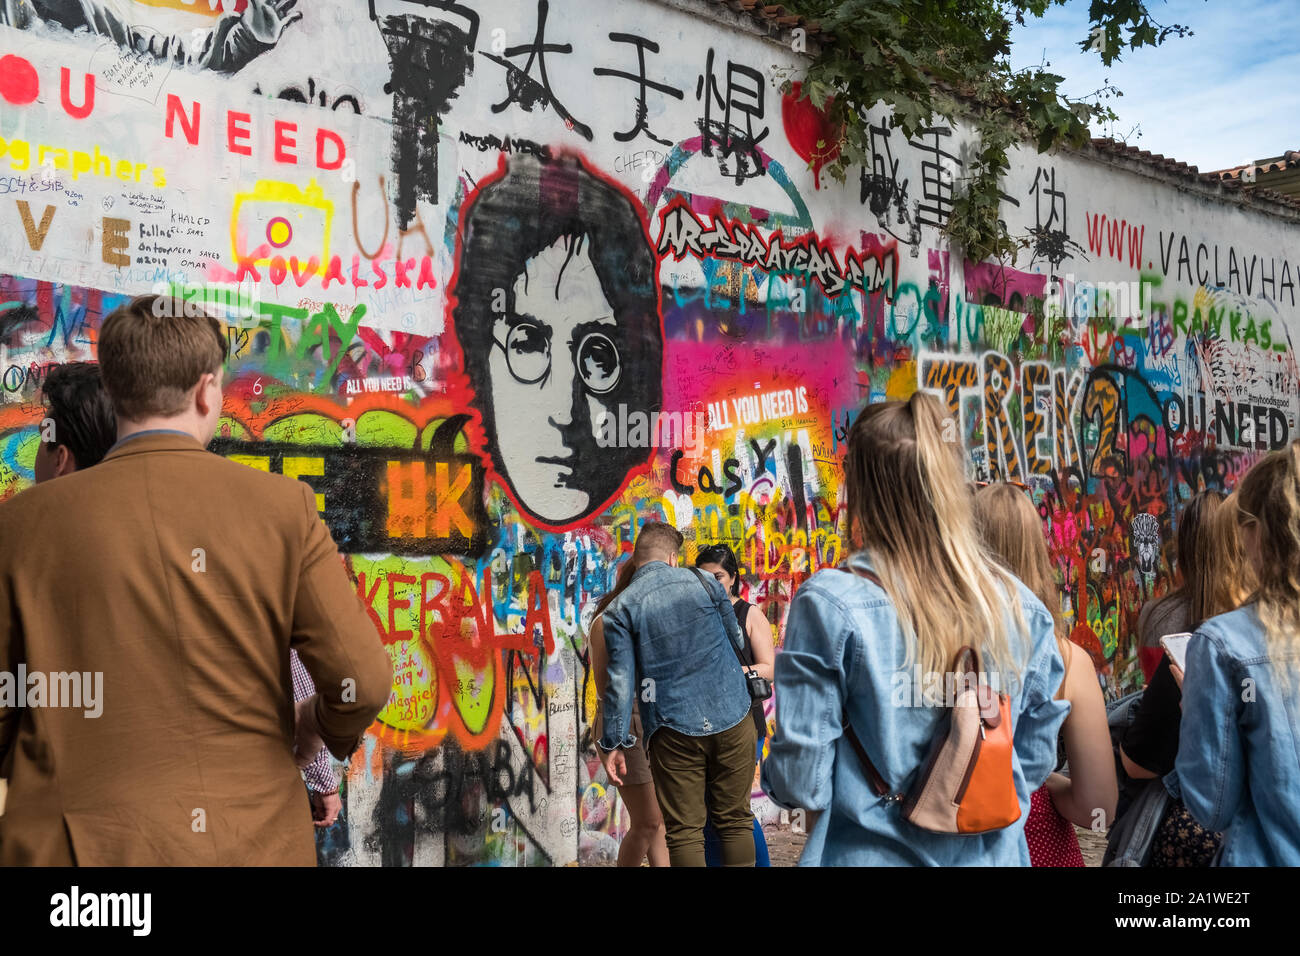 John Lennon wall, Prague, République tchèque. Affichage des mots d'art et touristes, Grand Prieuré Square, Mala Strana, Prague. Banque D'Images